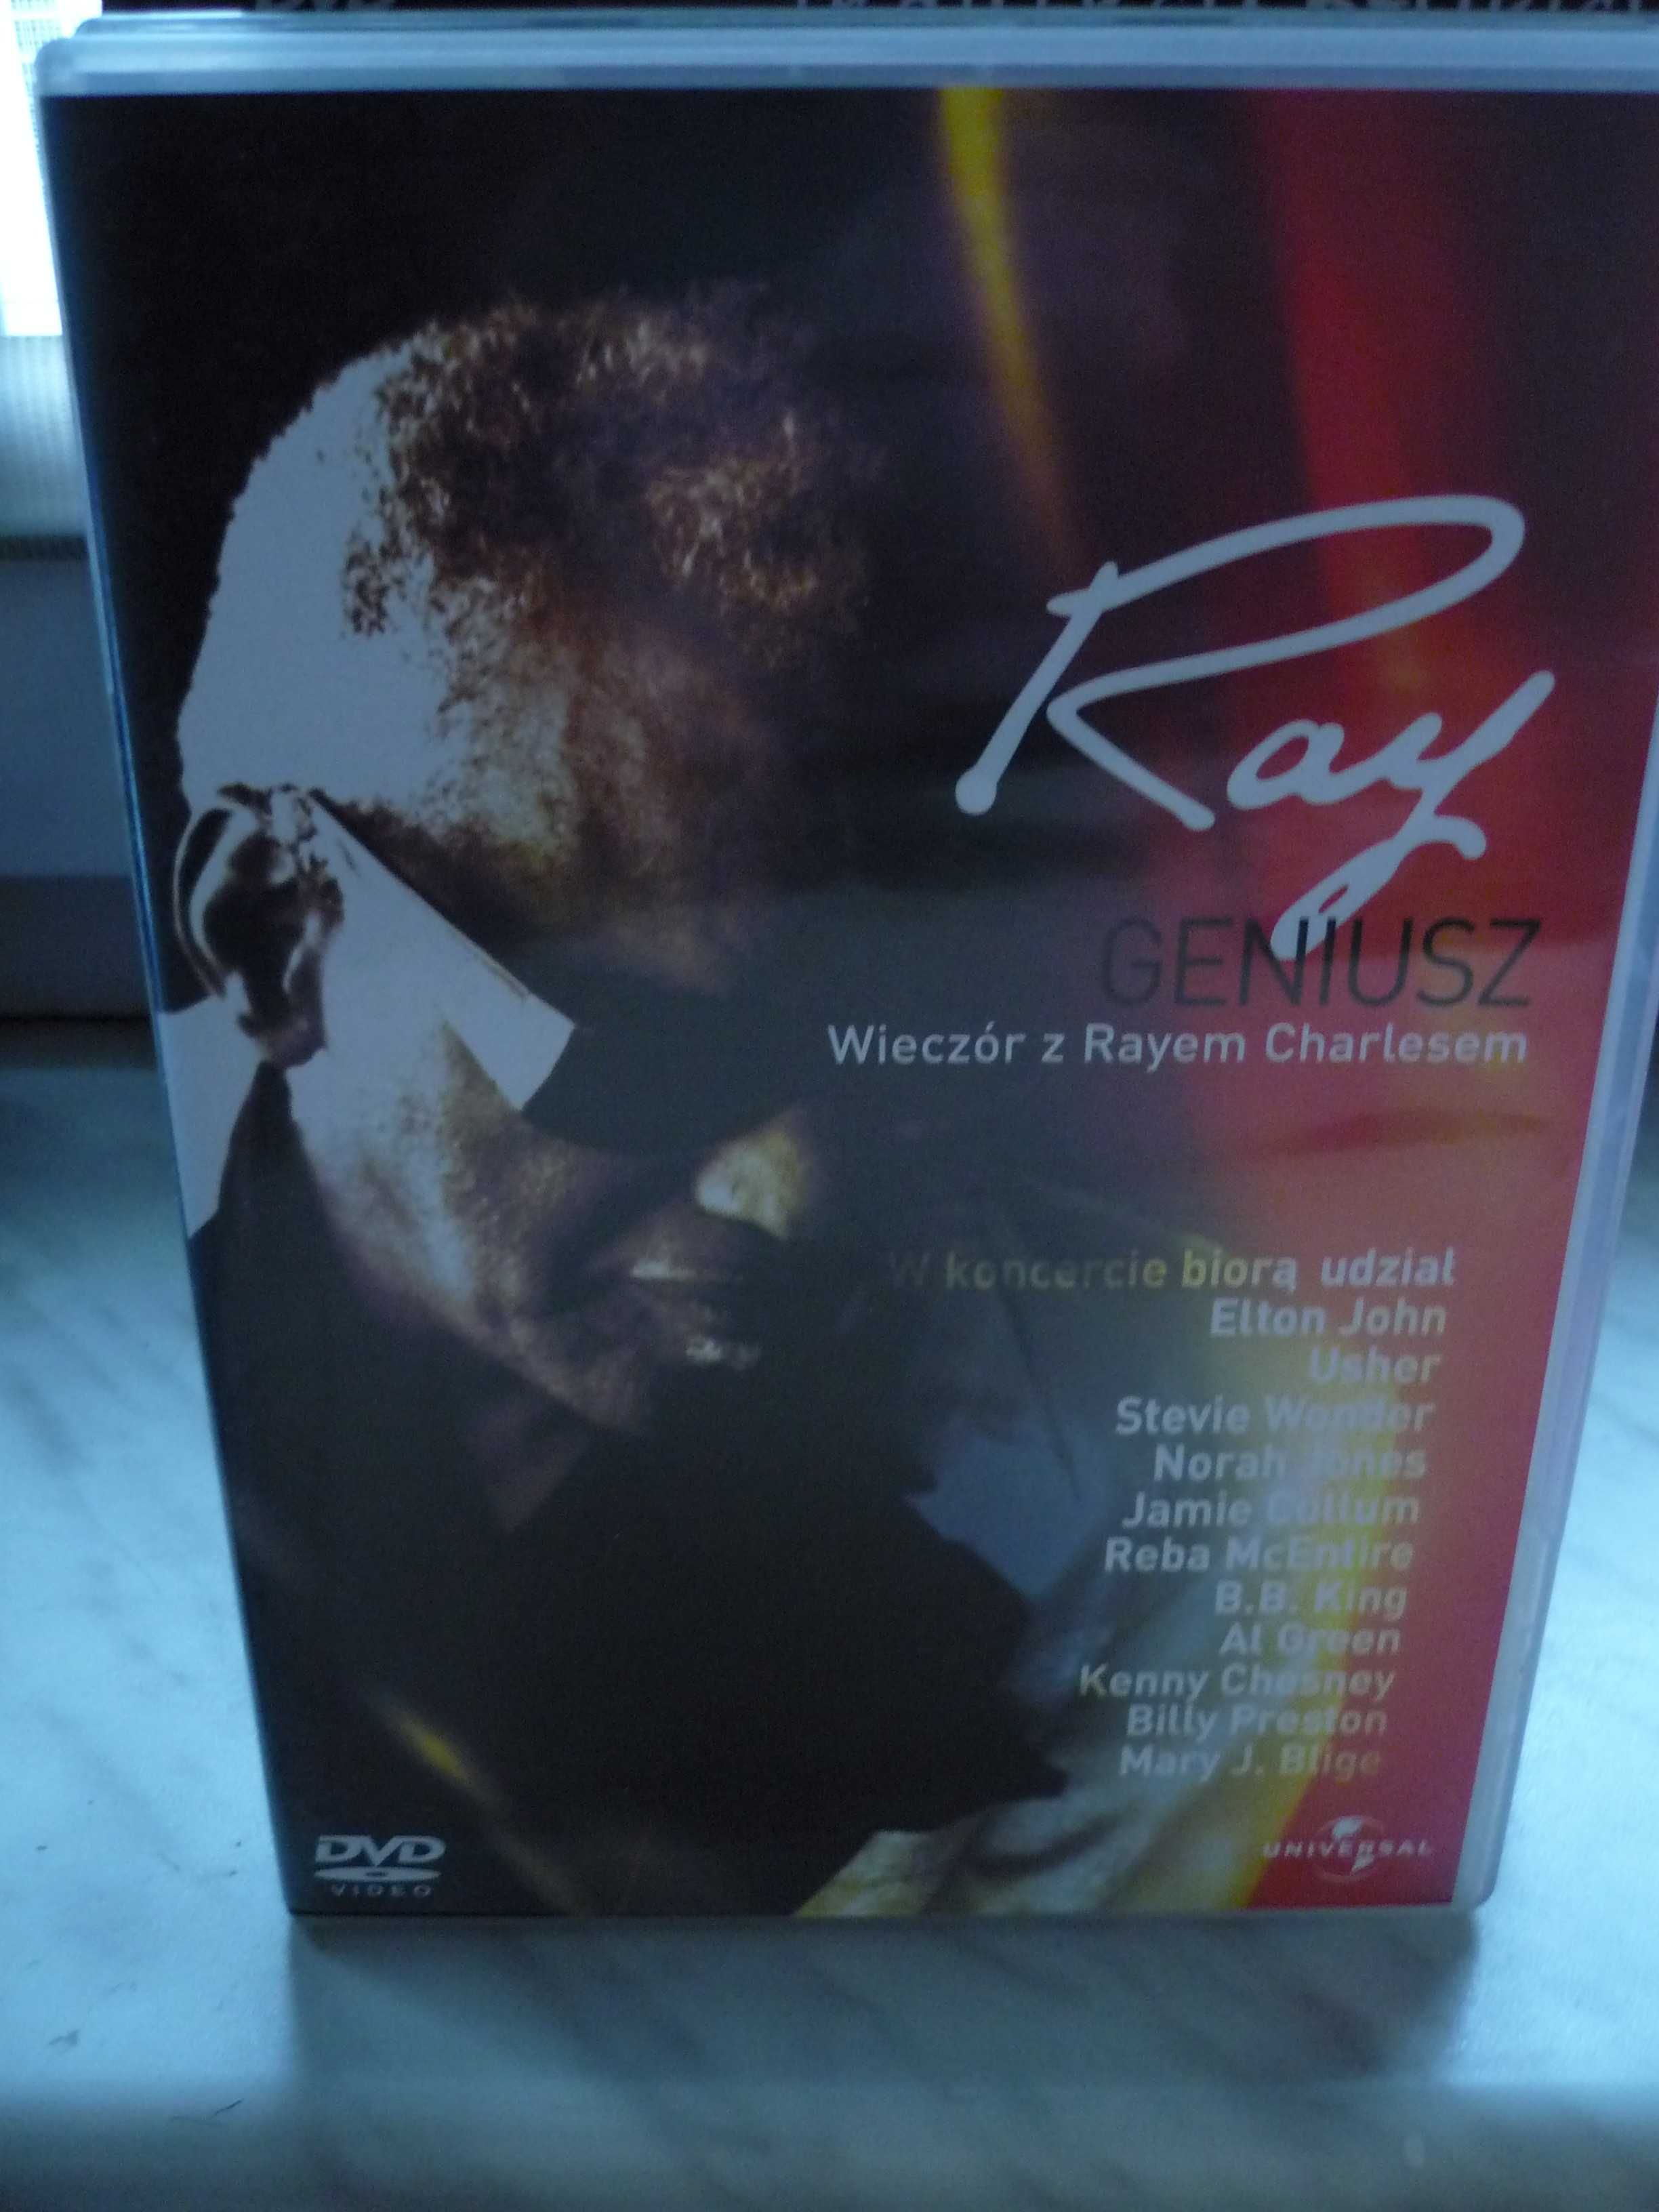 Geniusz , Wieczór z Rayem Charlesem , DVD.